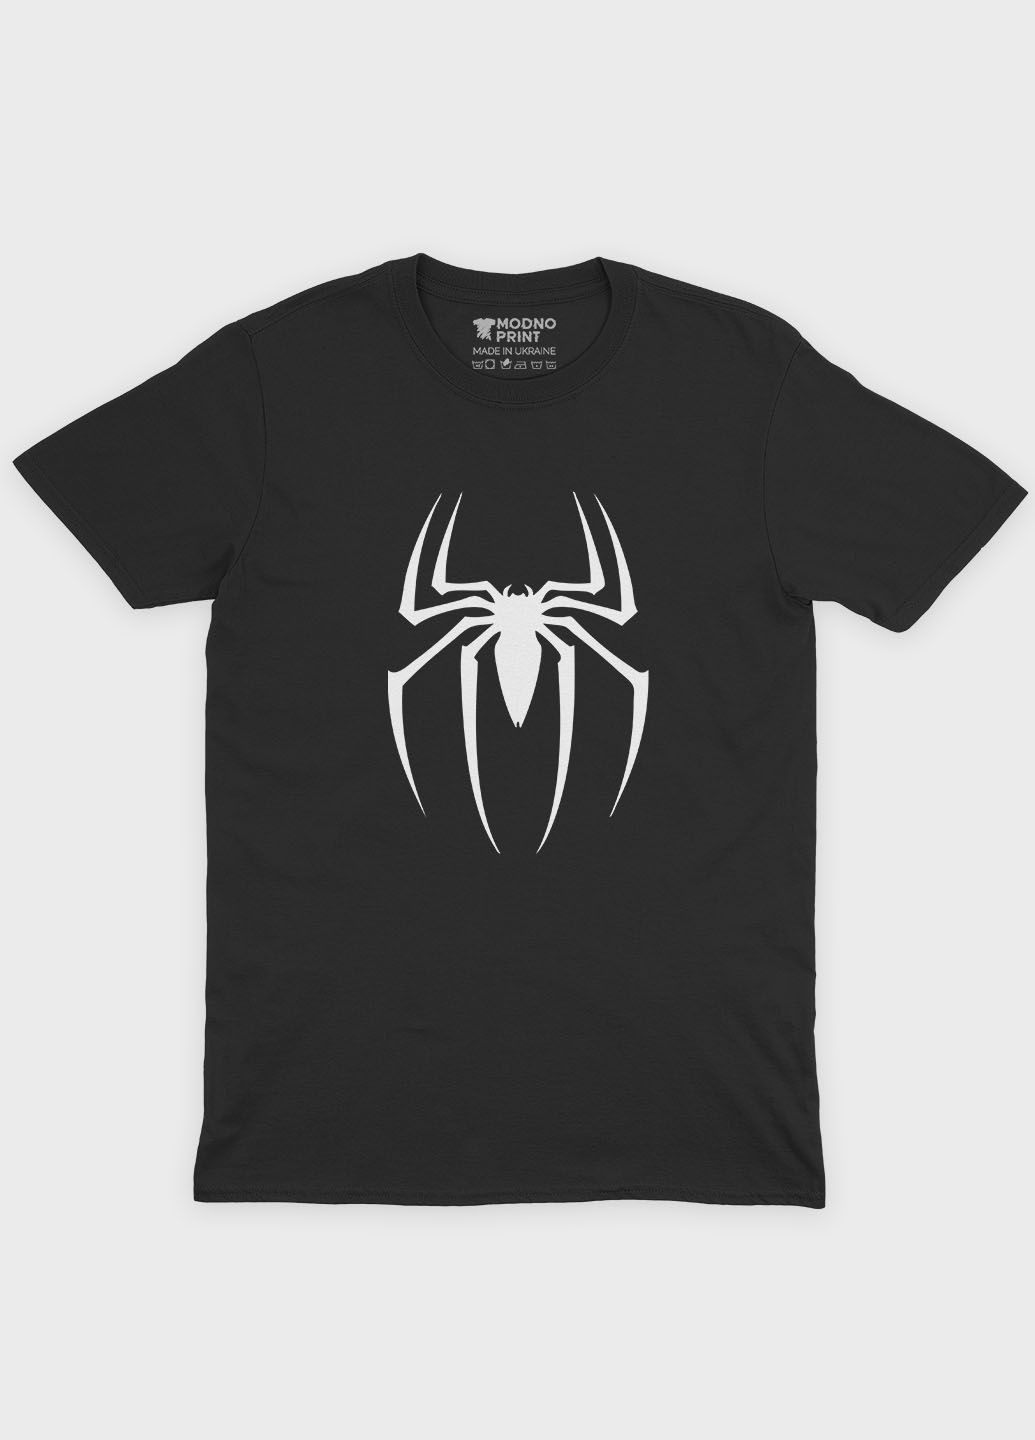 Чорна демісезонна футболка для хлопчика з принтом супергероя - людина-павук (ts001-1-bl-006-014-106-b) Modno